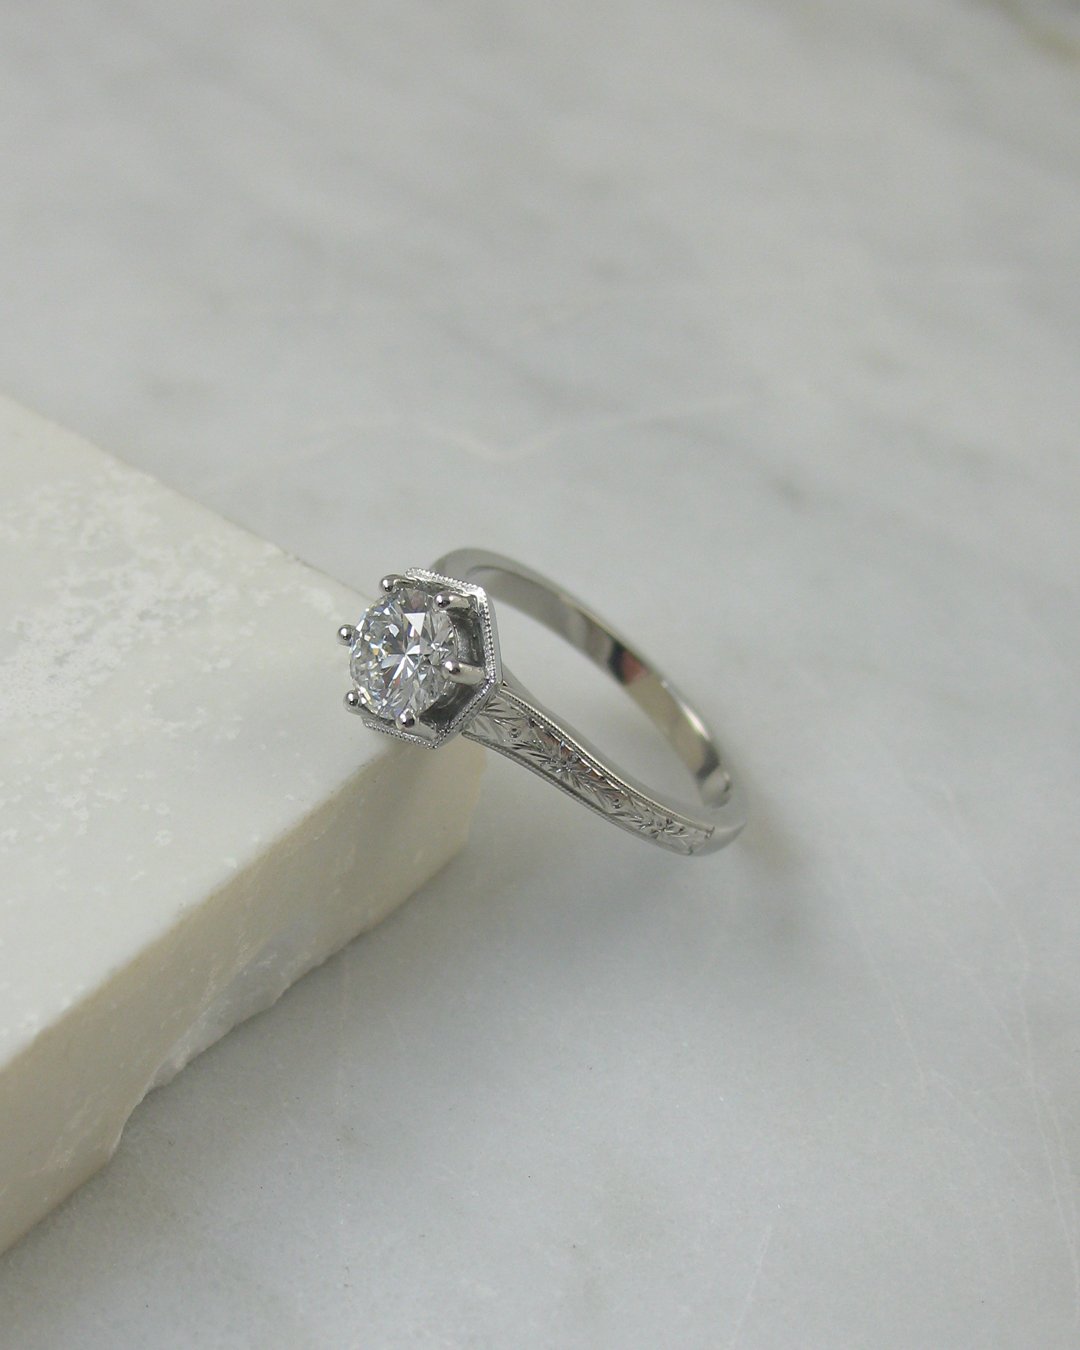 An orange blossom engraved diamond bespoke engagement ring